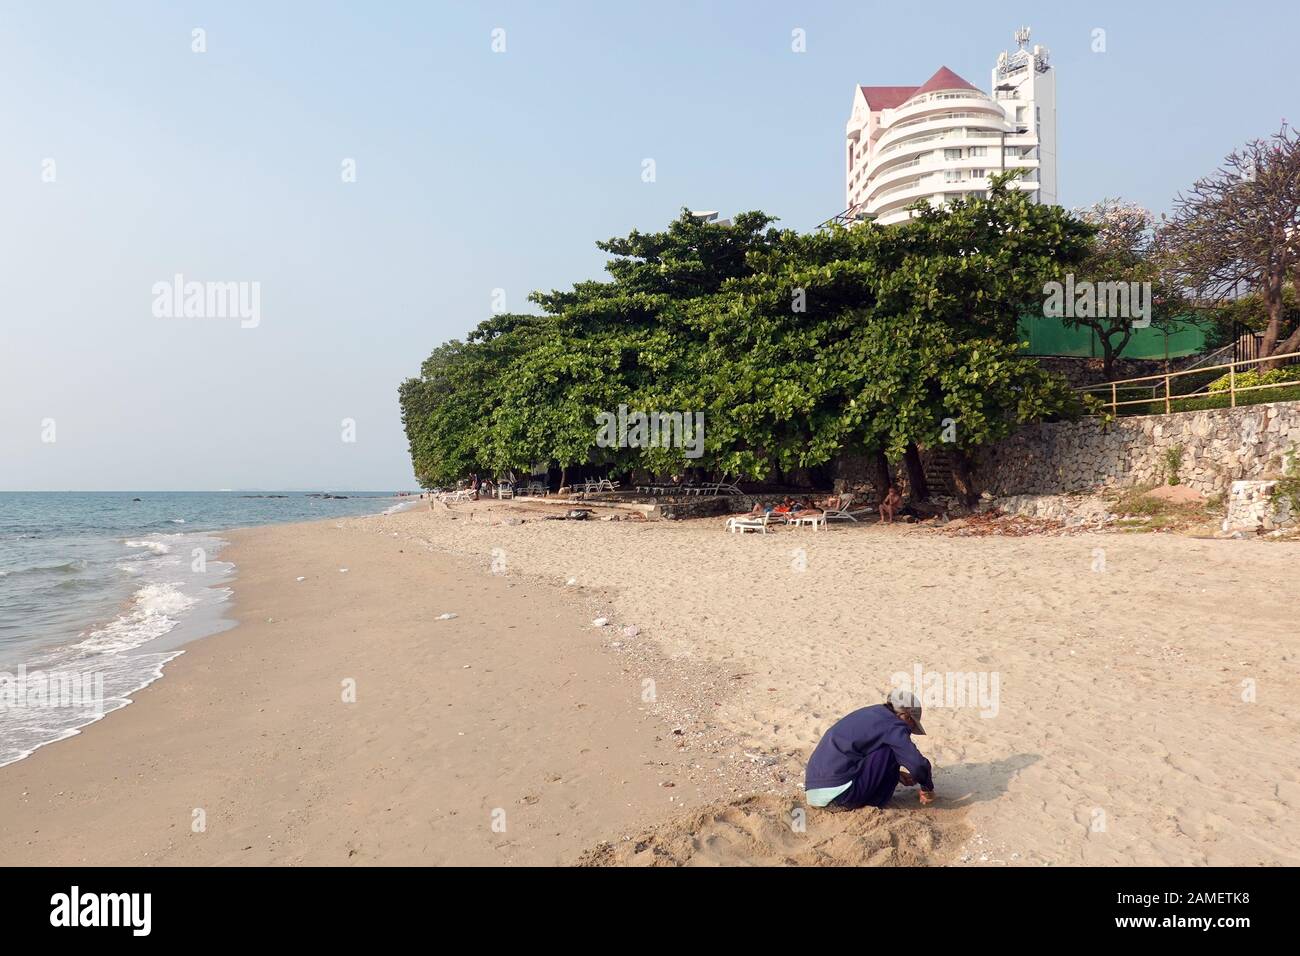 Pattaya, Thailand - 23. Dezember 2019: Ältere Frau sitzt am Strand und versucht, Muscheln zu finden. Ausländertouristen in Sonnenliegen im Hintergrund. Stockfoto